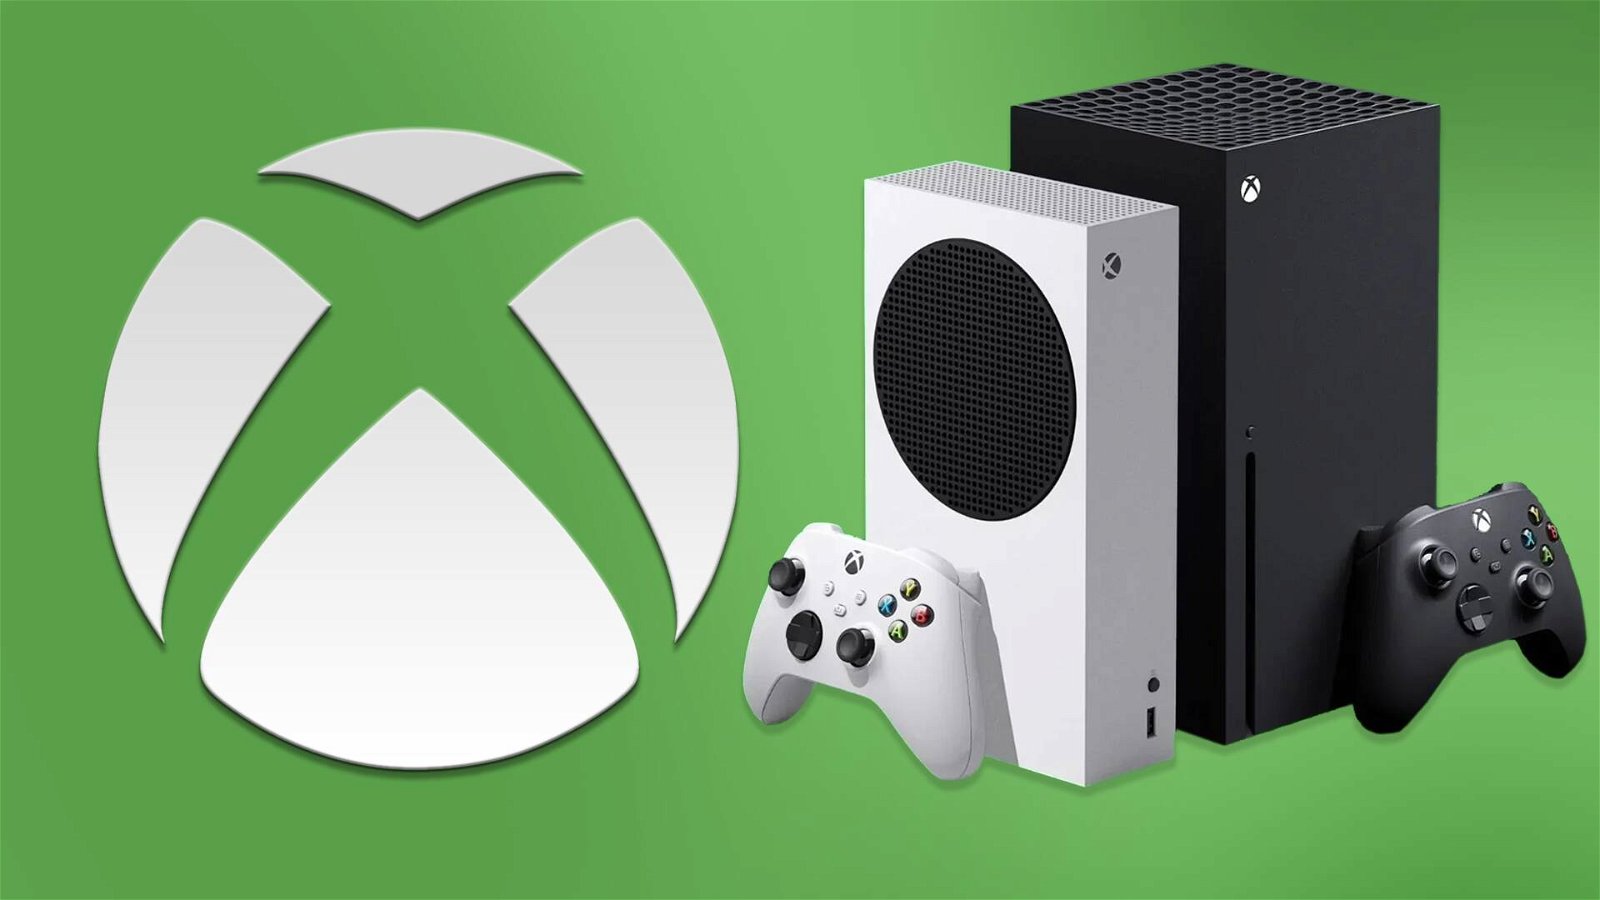 Xbox come PS4: quando l'orologio si spegnerà non si potrà più giocare